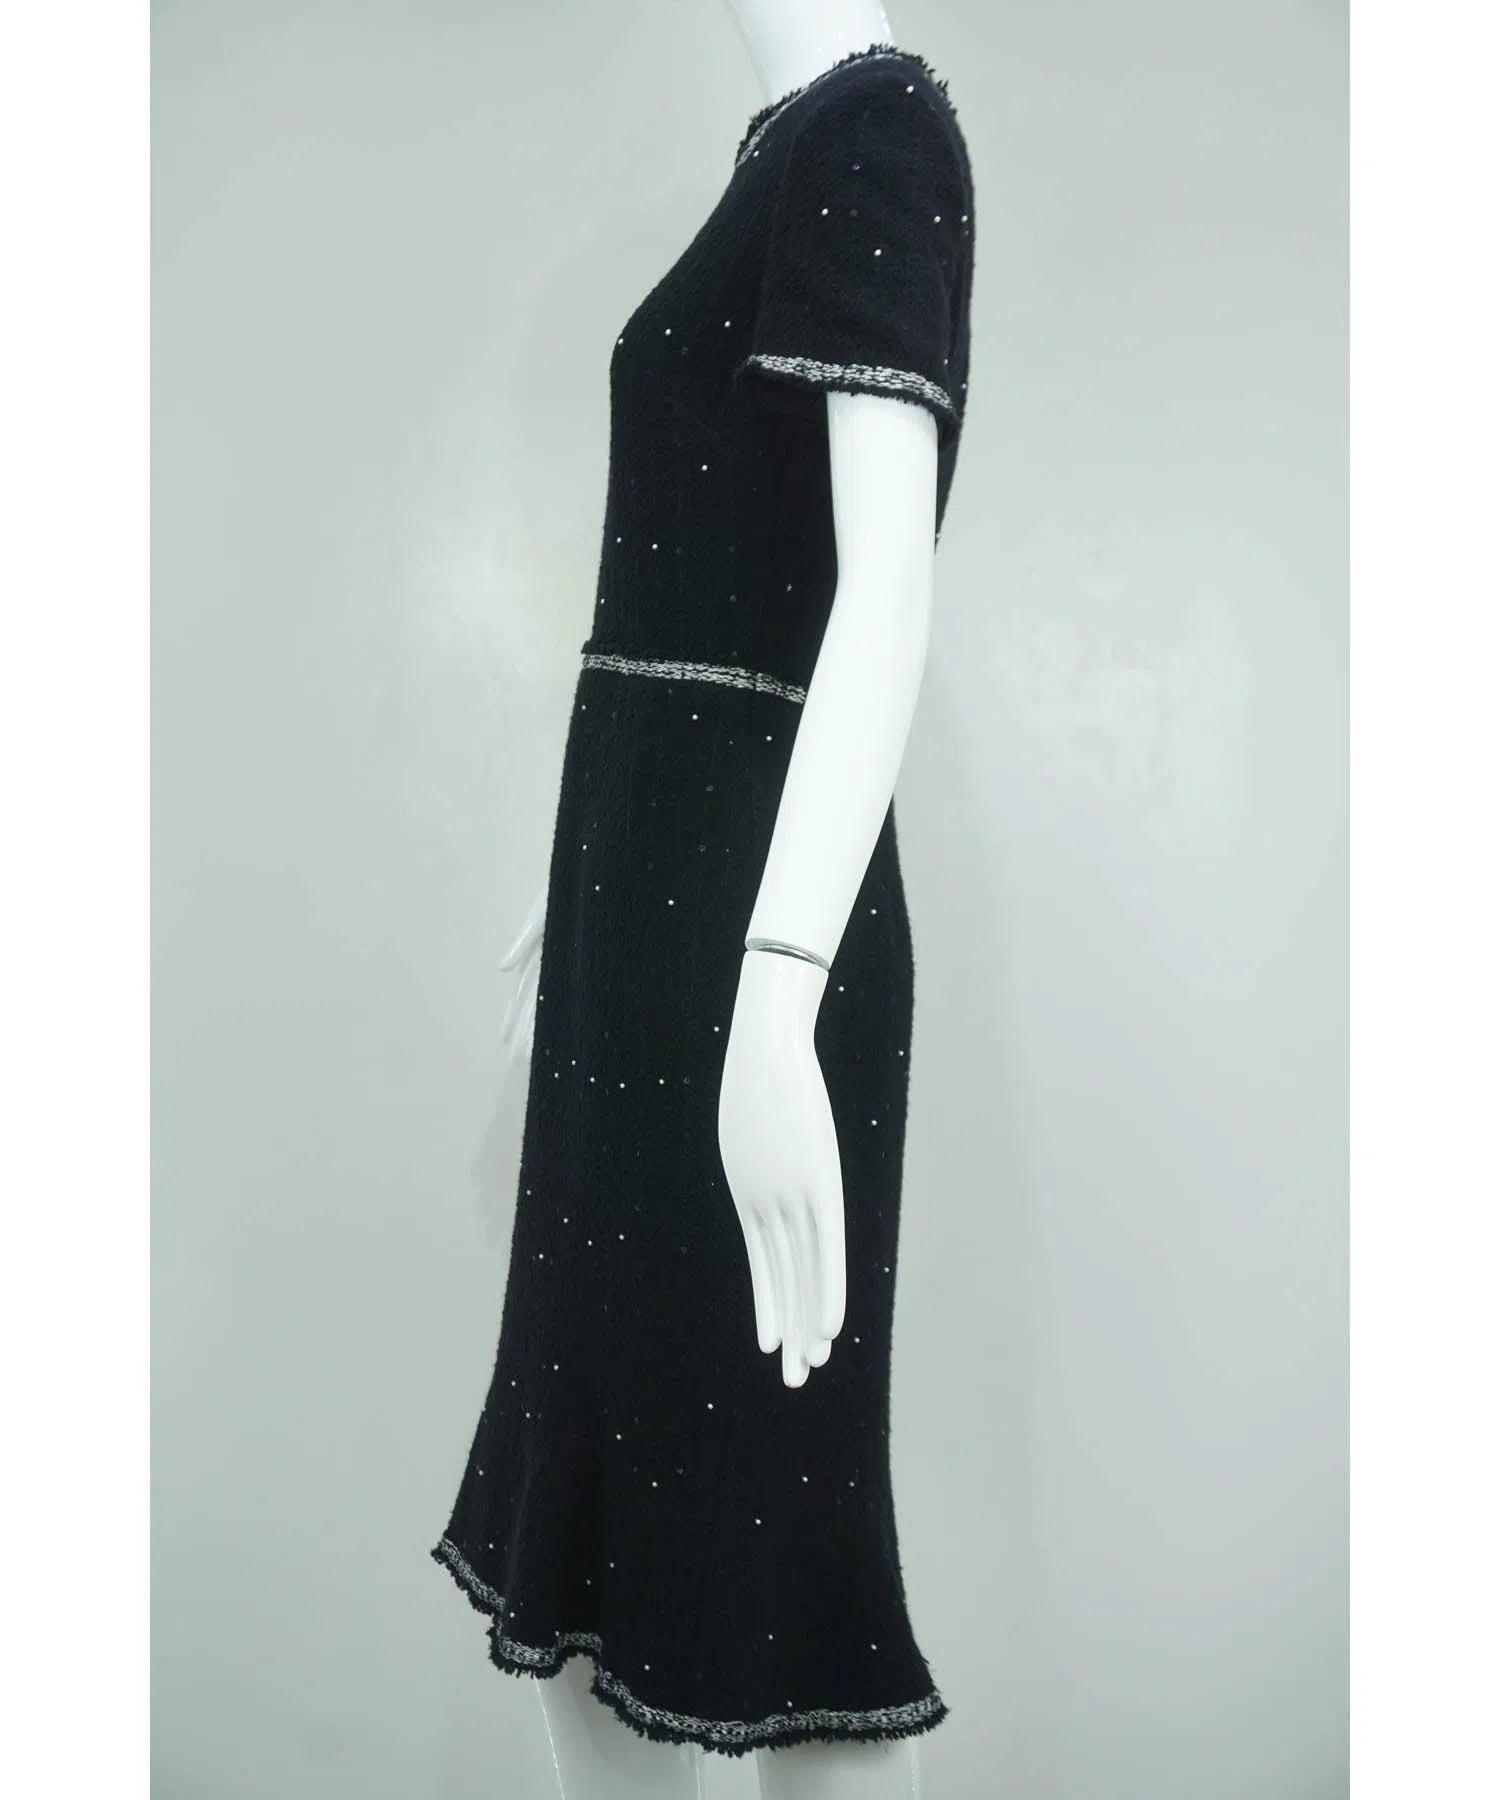 Oscar de la Renta Black Pearl and Sequins Embellished Cocktail Dress Sz 6